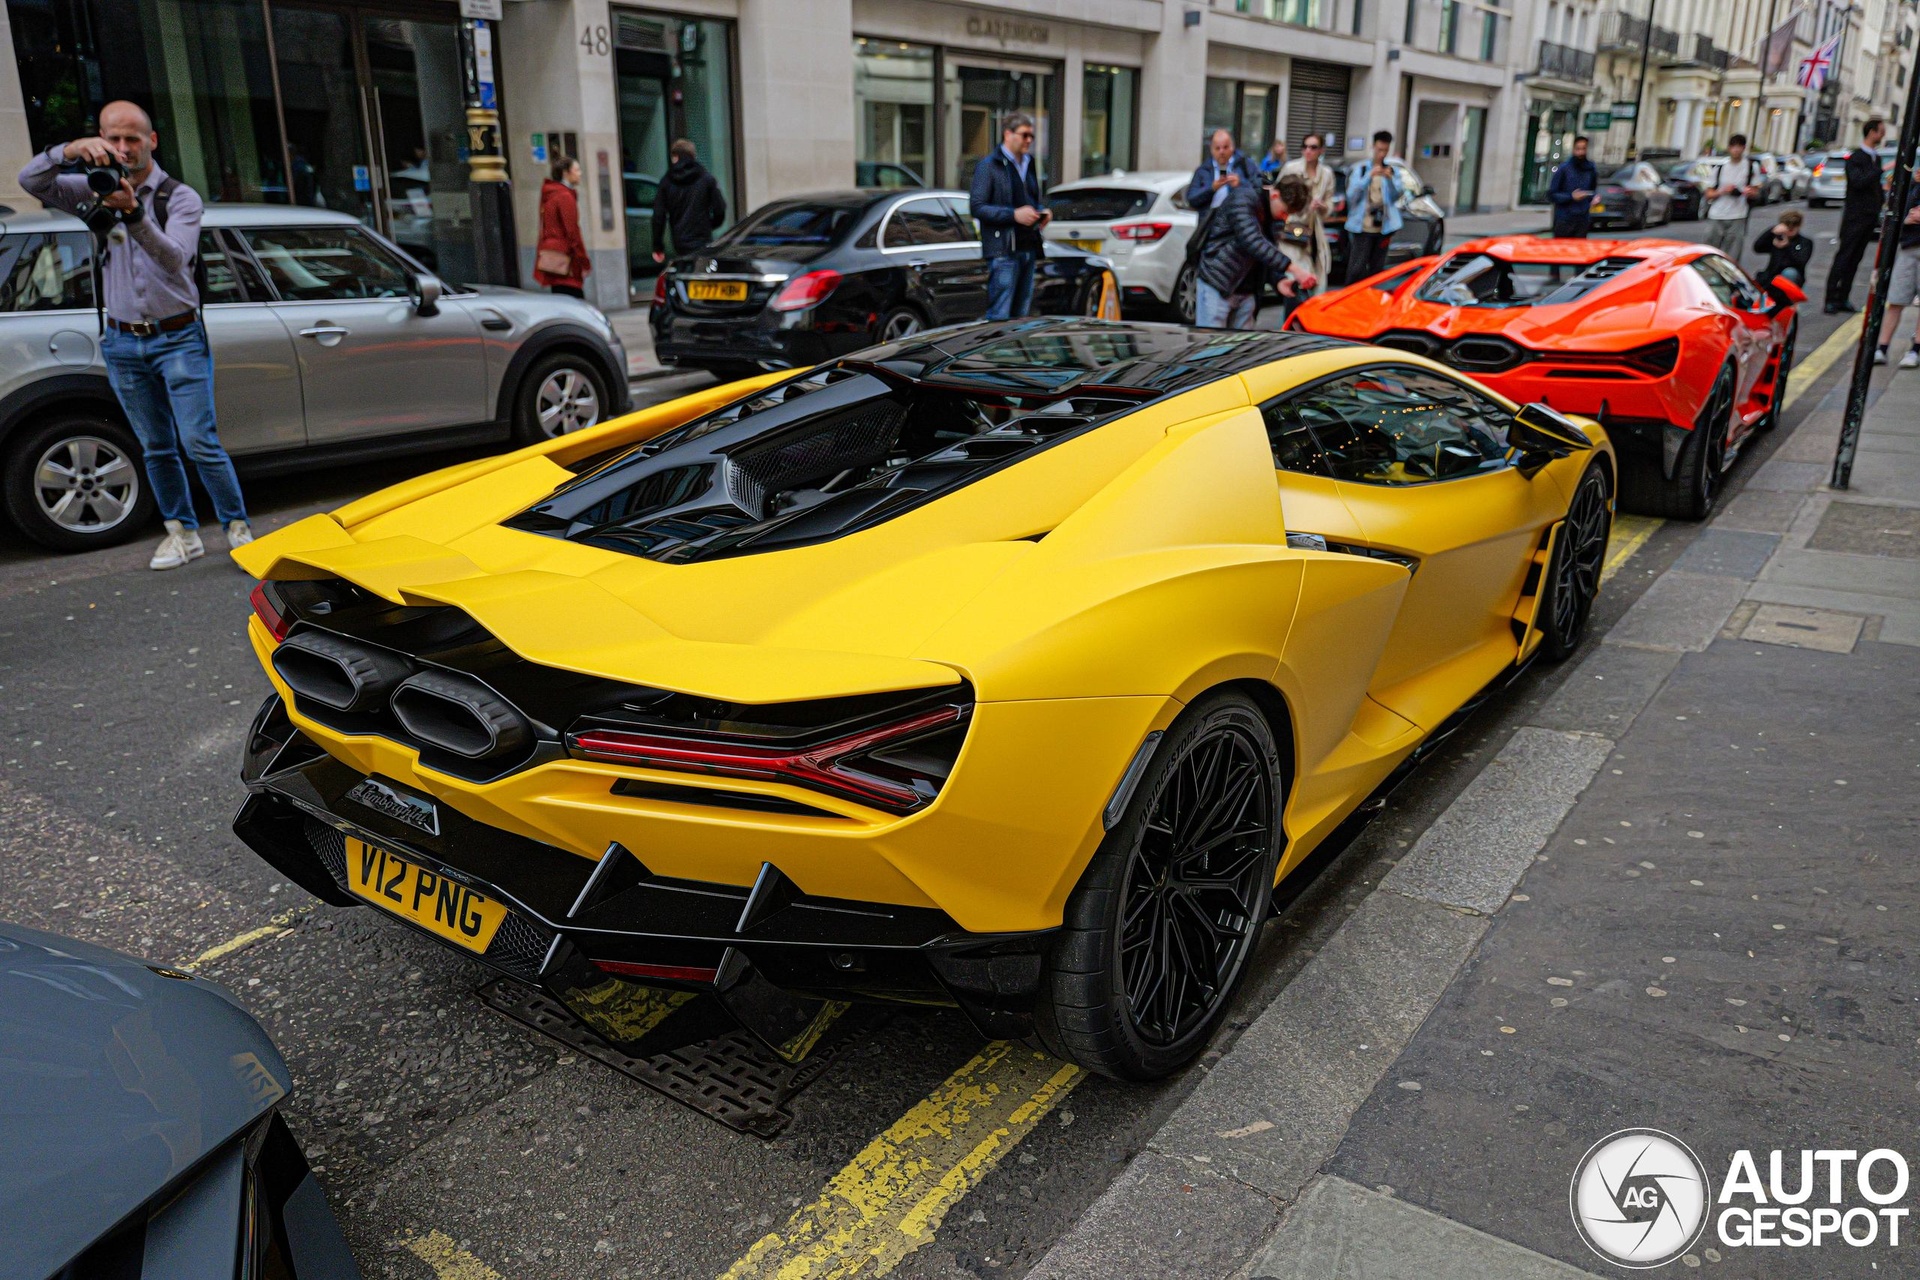 4 siêu xe Lamborghini Revuelto cùng xuất hiện tại London